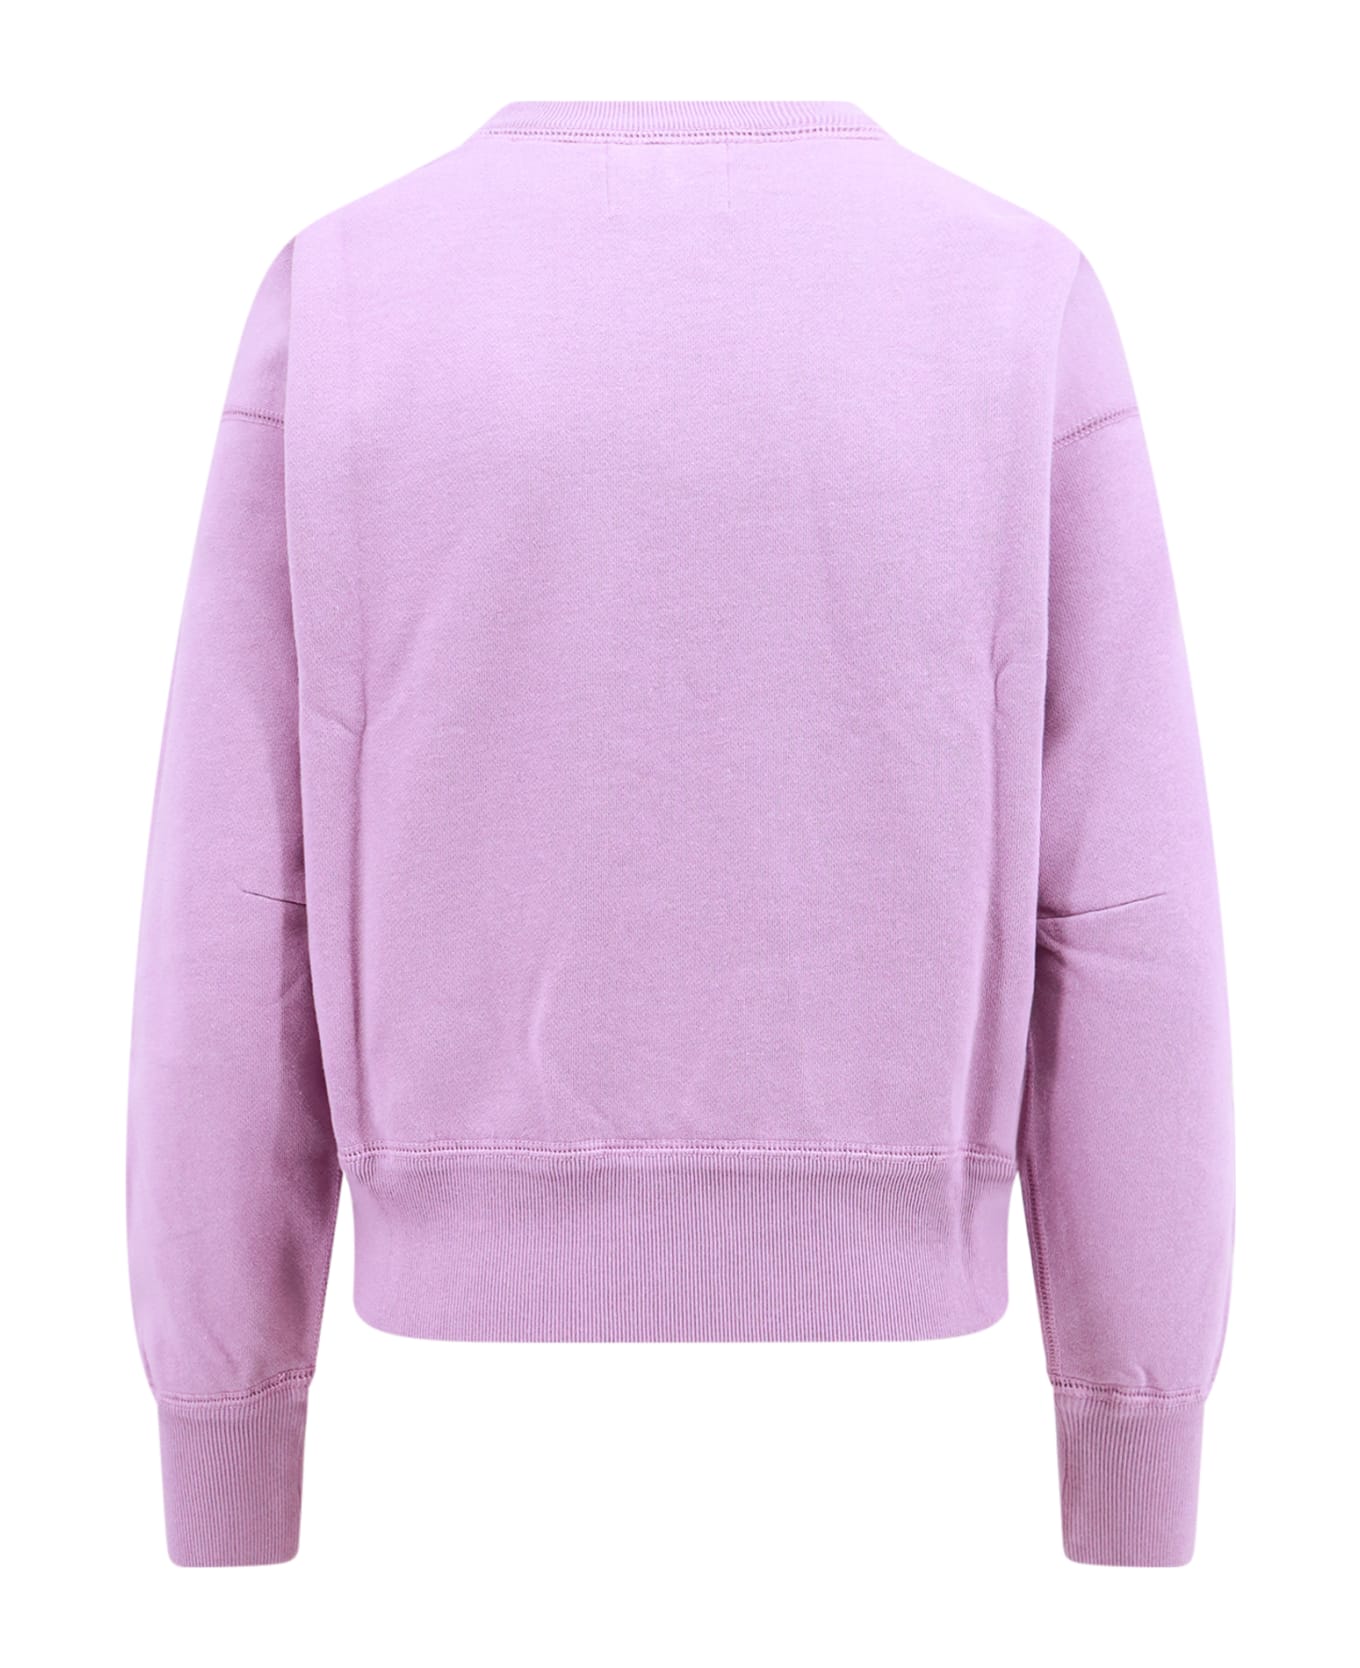 Marant Étoile Sweatshirt - Lipe Lilac Purple